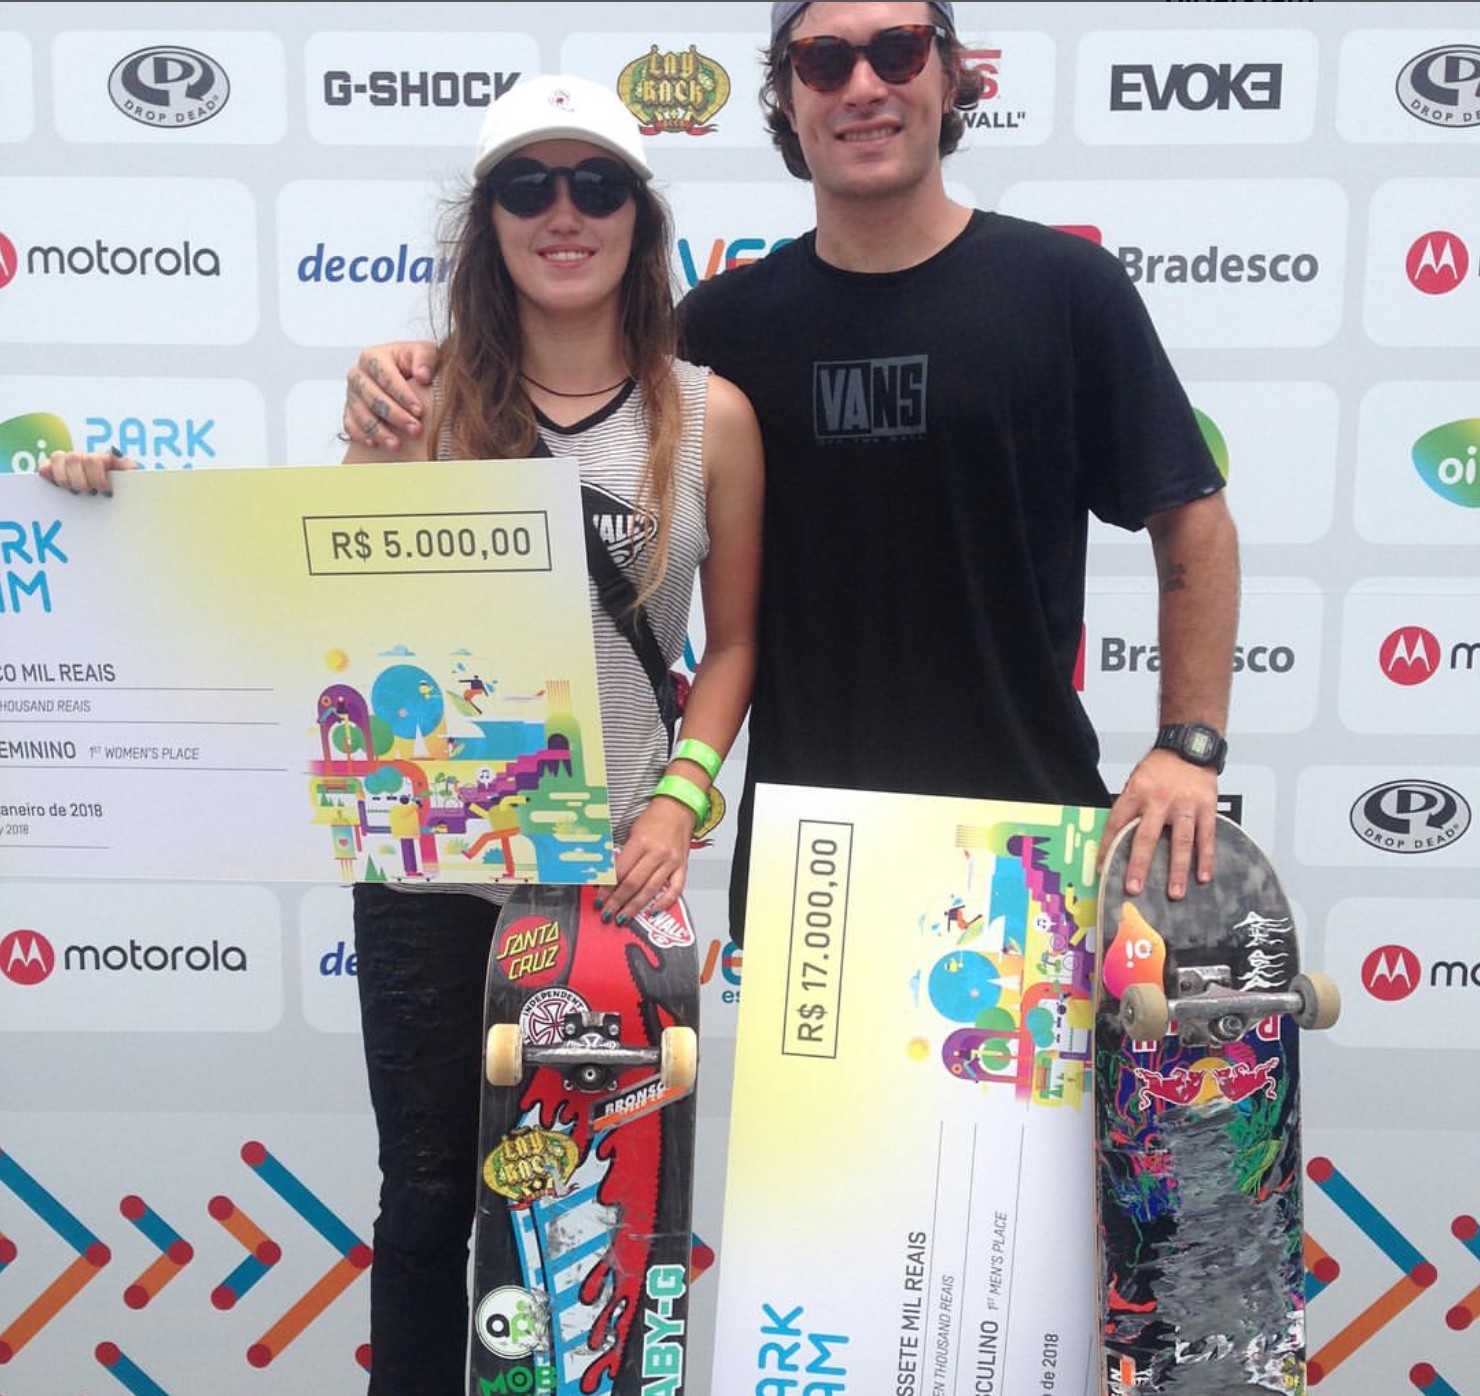 Yndiara e Pedro Barros na premiação do Oi Park Jam, em 2018 (Foto: Reprodução / Instagram)